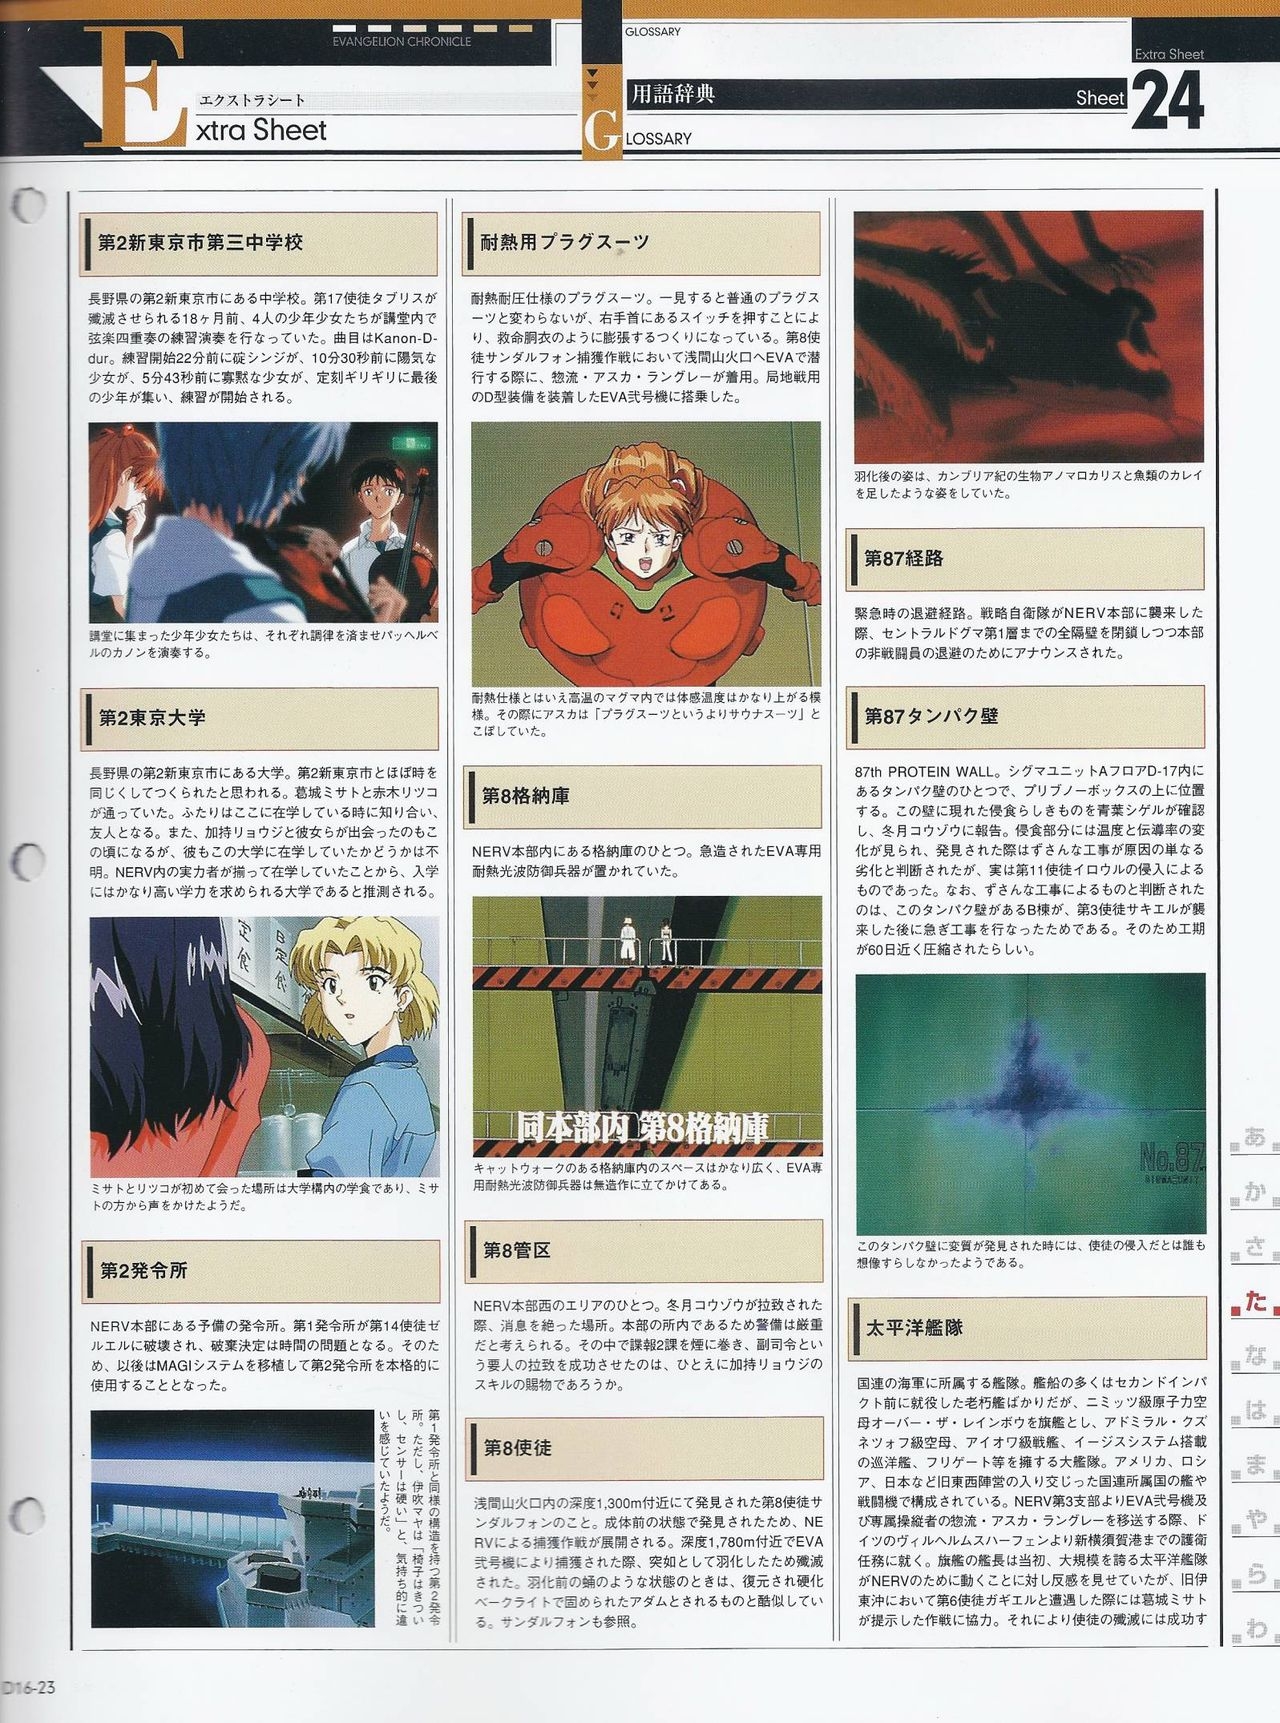 Neon Genesis Evangelion - Chronicle 16 23